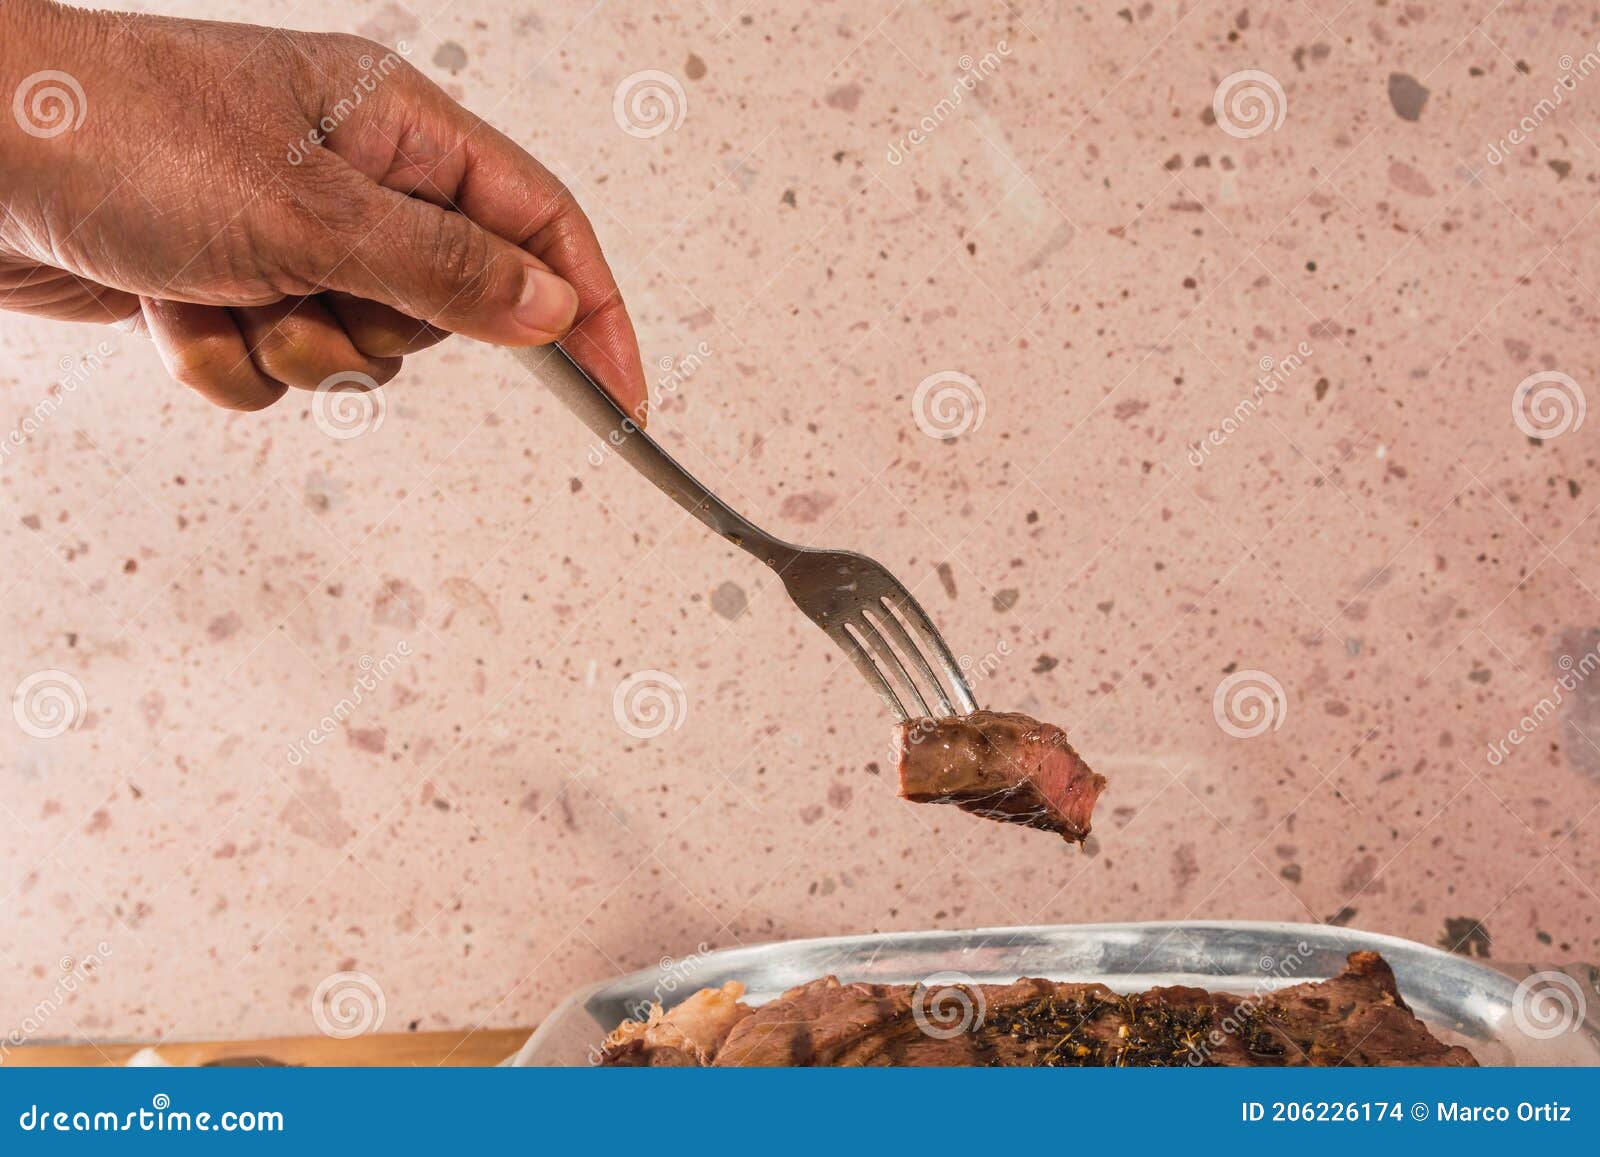 cut of meat `aguja norteÃÂ±a sonora`, served on a silver plate in the  of a cow 2